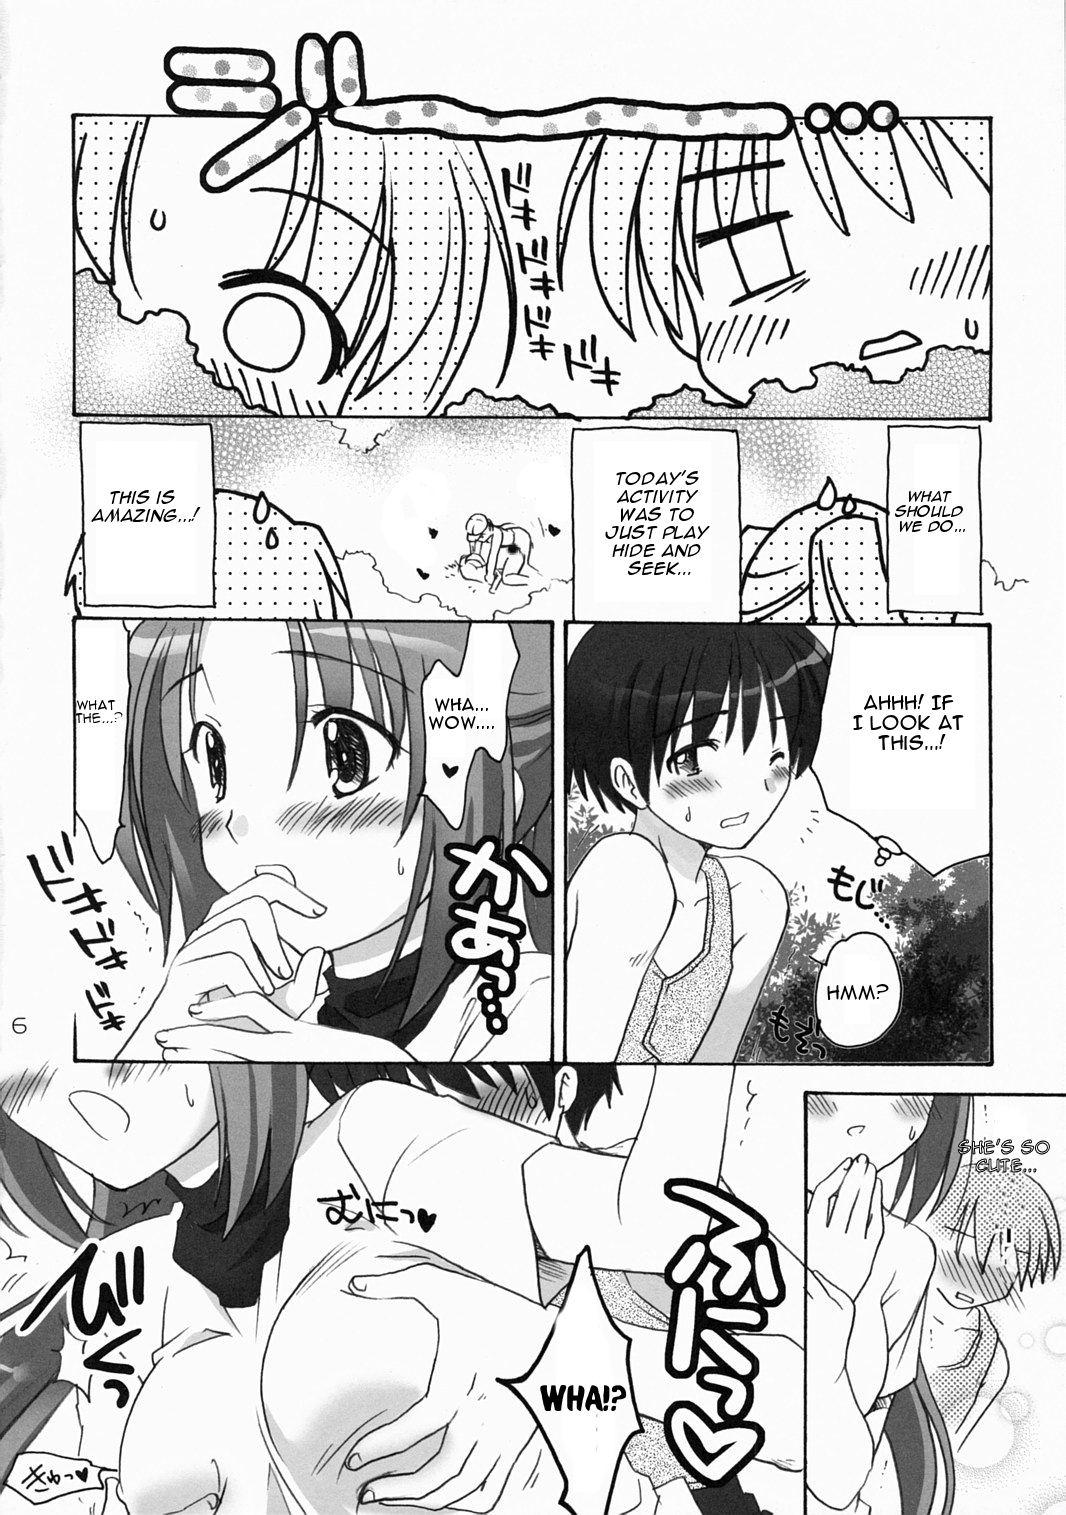 Class Higurashi Urabon 2 - Higurashi no naku koro ni Amatuer Porn - Page 5